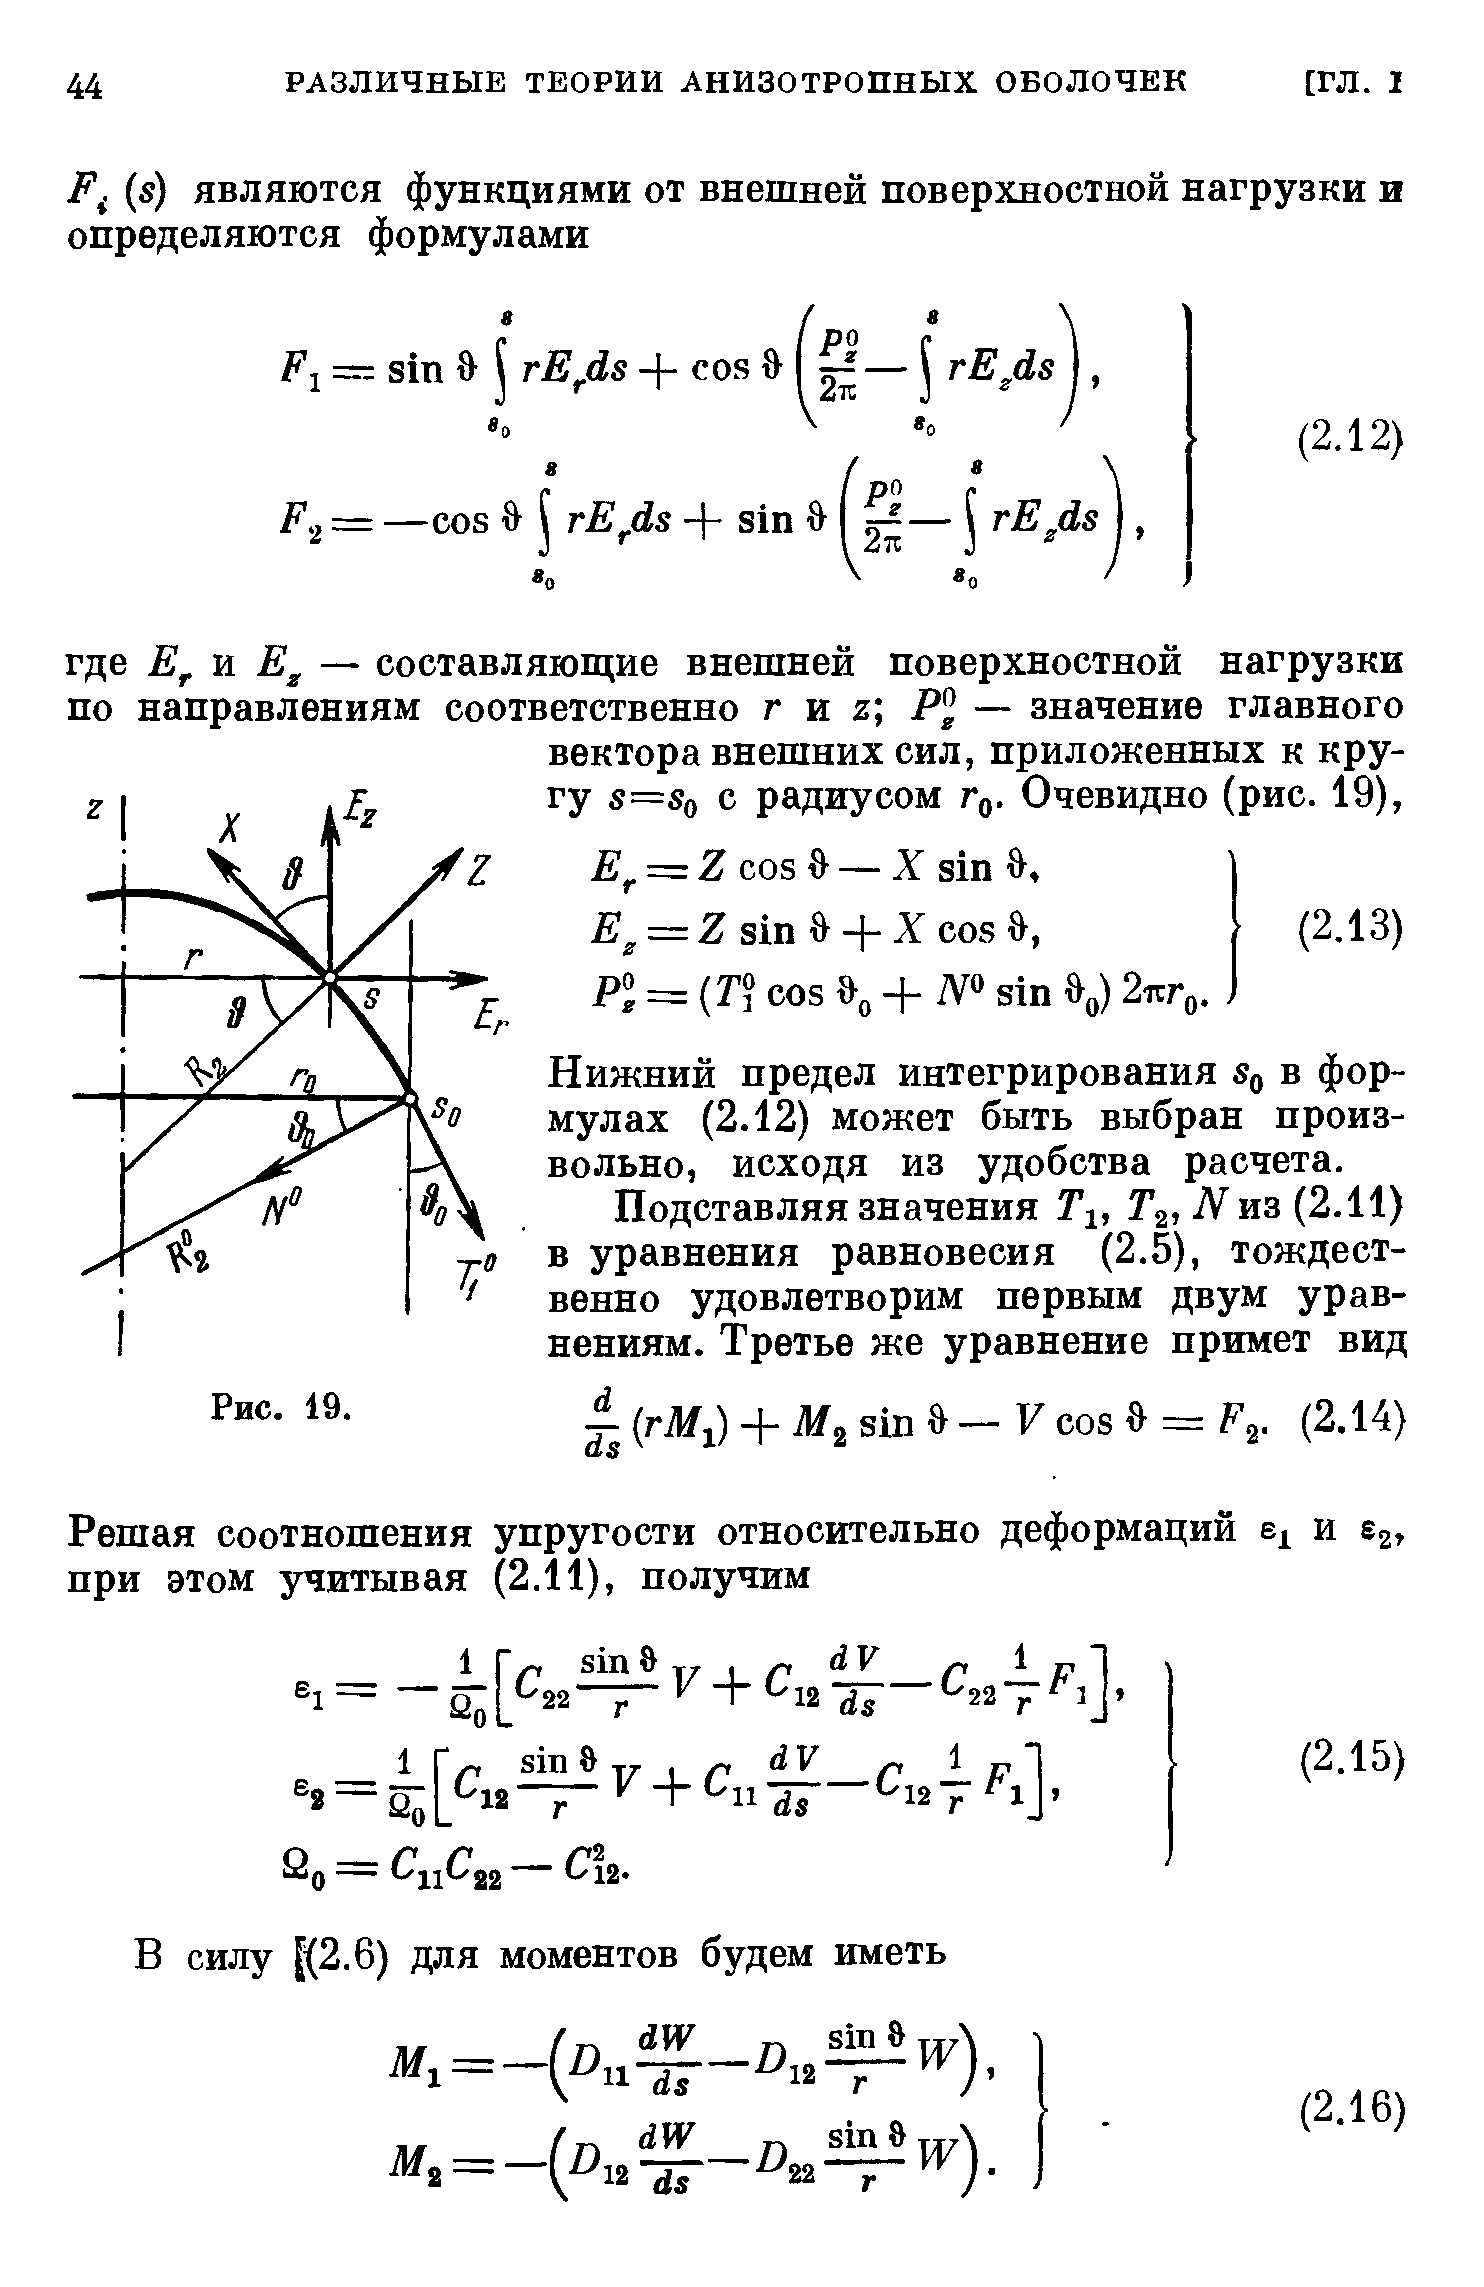 Нижний предел интегрирования Sq в формулах (2.12) может быть выбран произвольно, исходя из удобства расчета.
